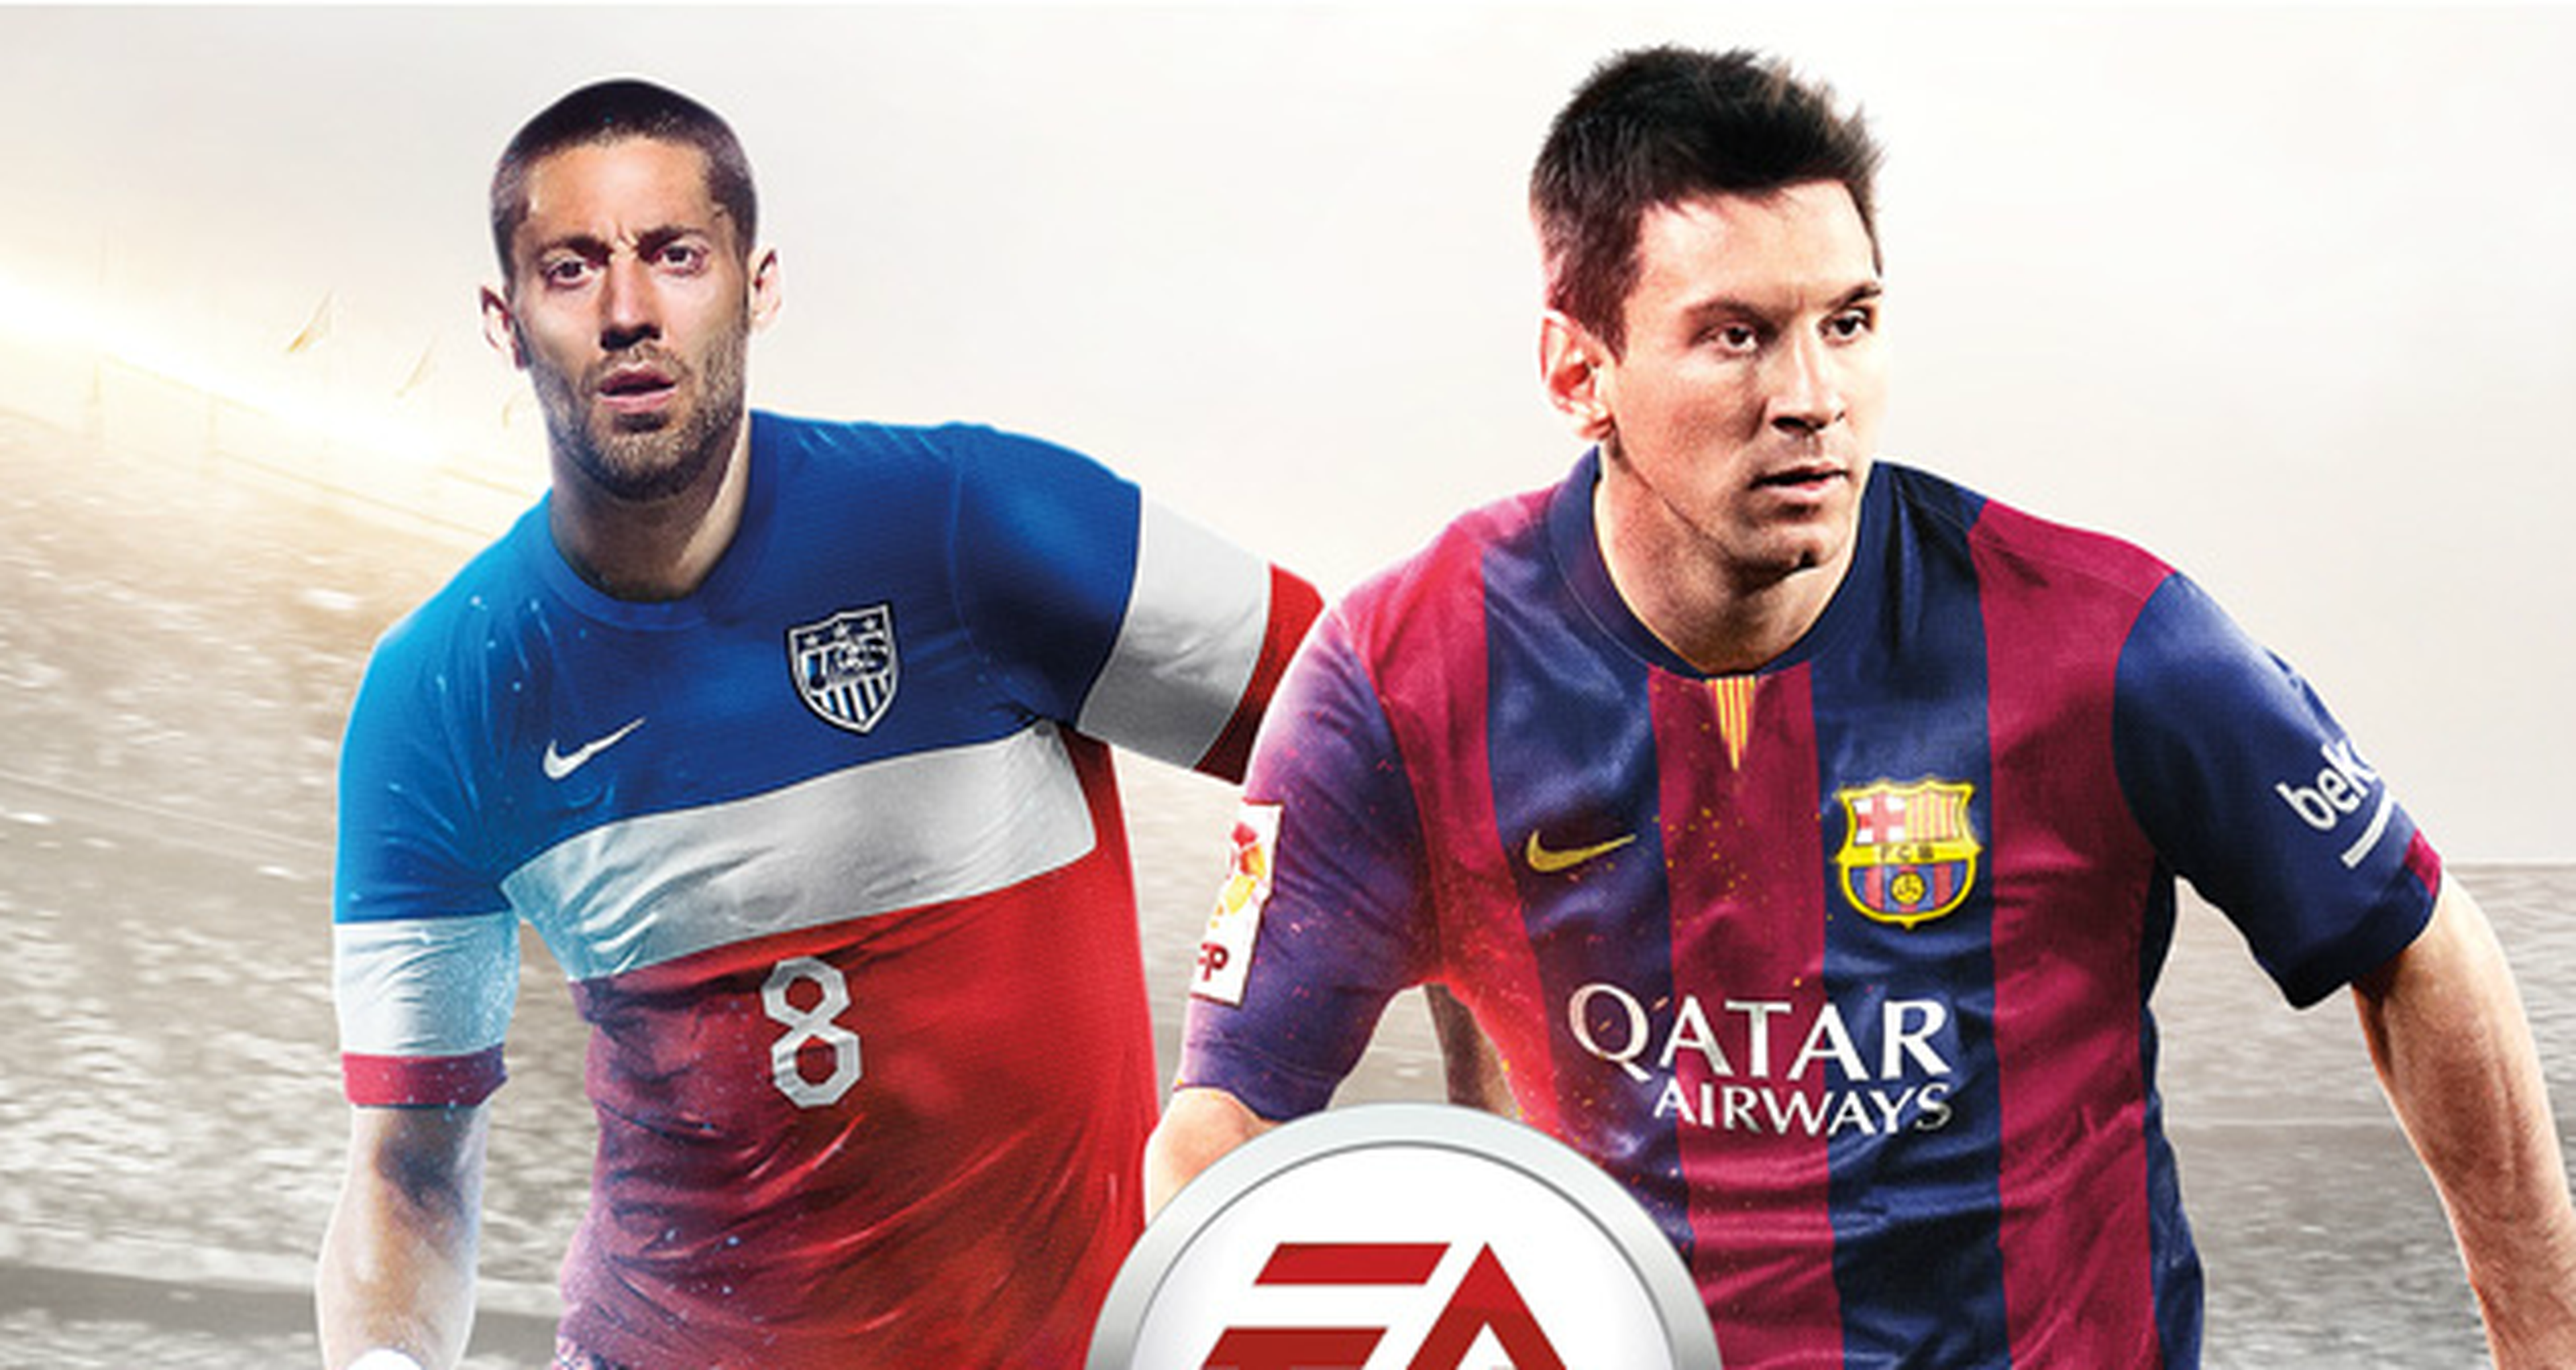 Clint Dempsey acompañará a Messi en la portada de FIFA 15 en EEUU